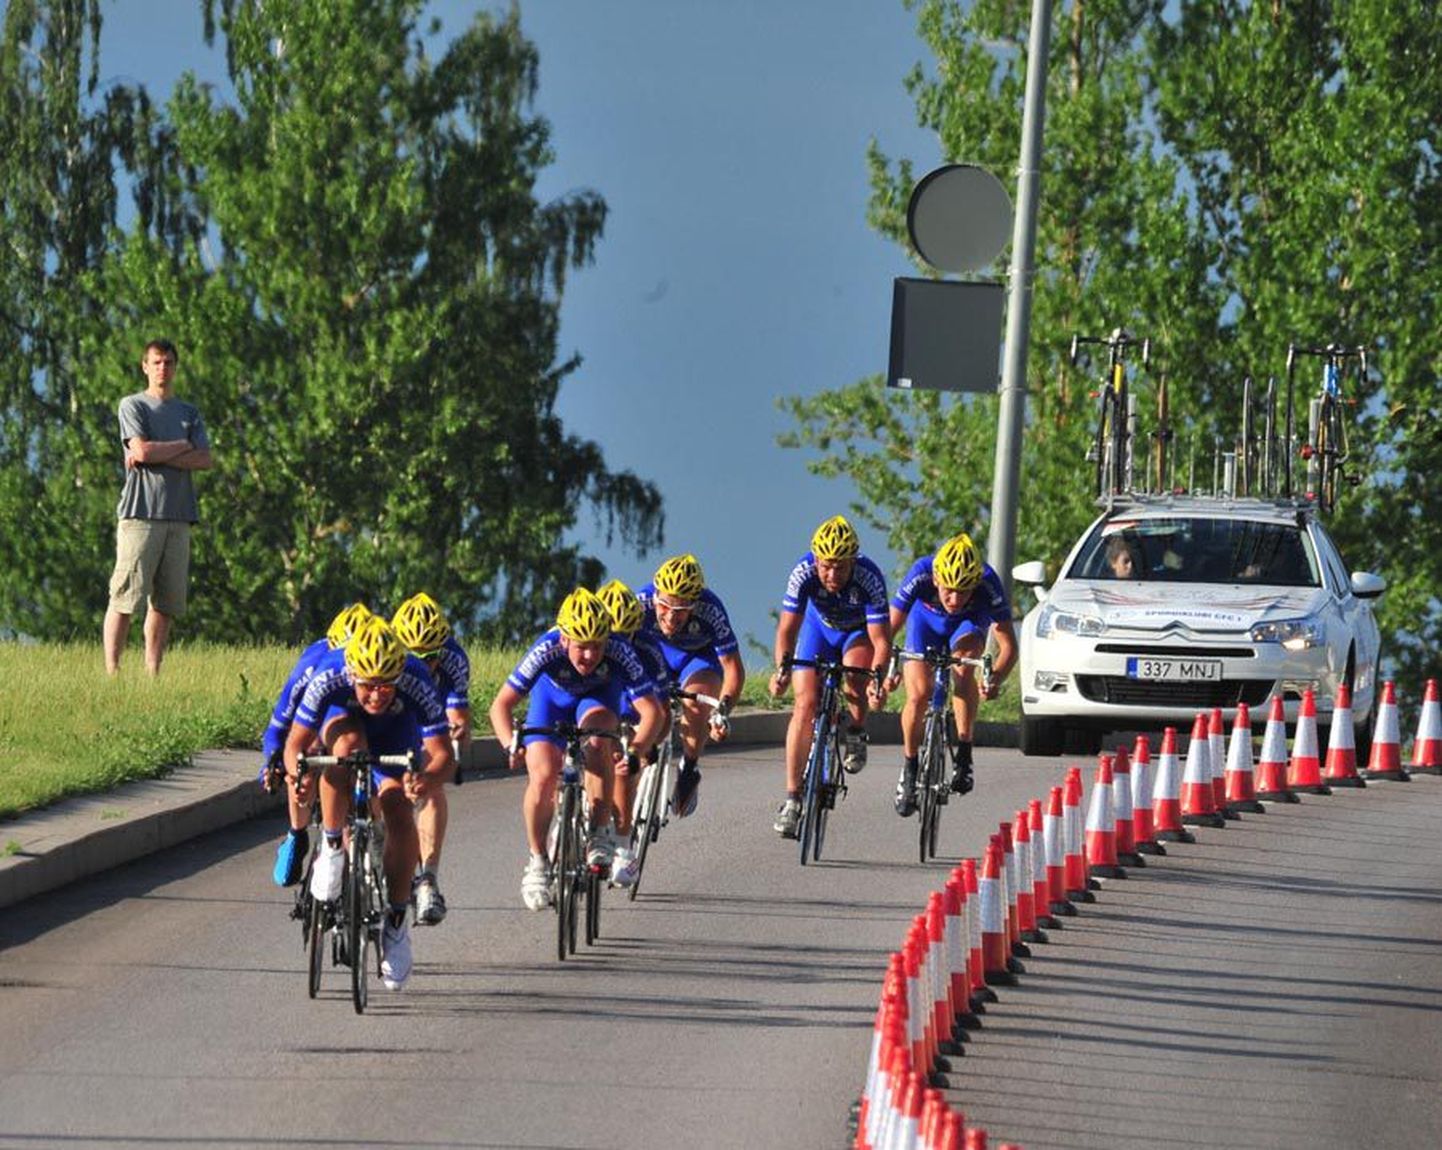 CFC edestas Saaremaa velotuuri 19 km meeskonnasõidus järgmist tiimi 16 sekundiga.